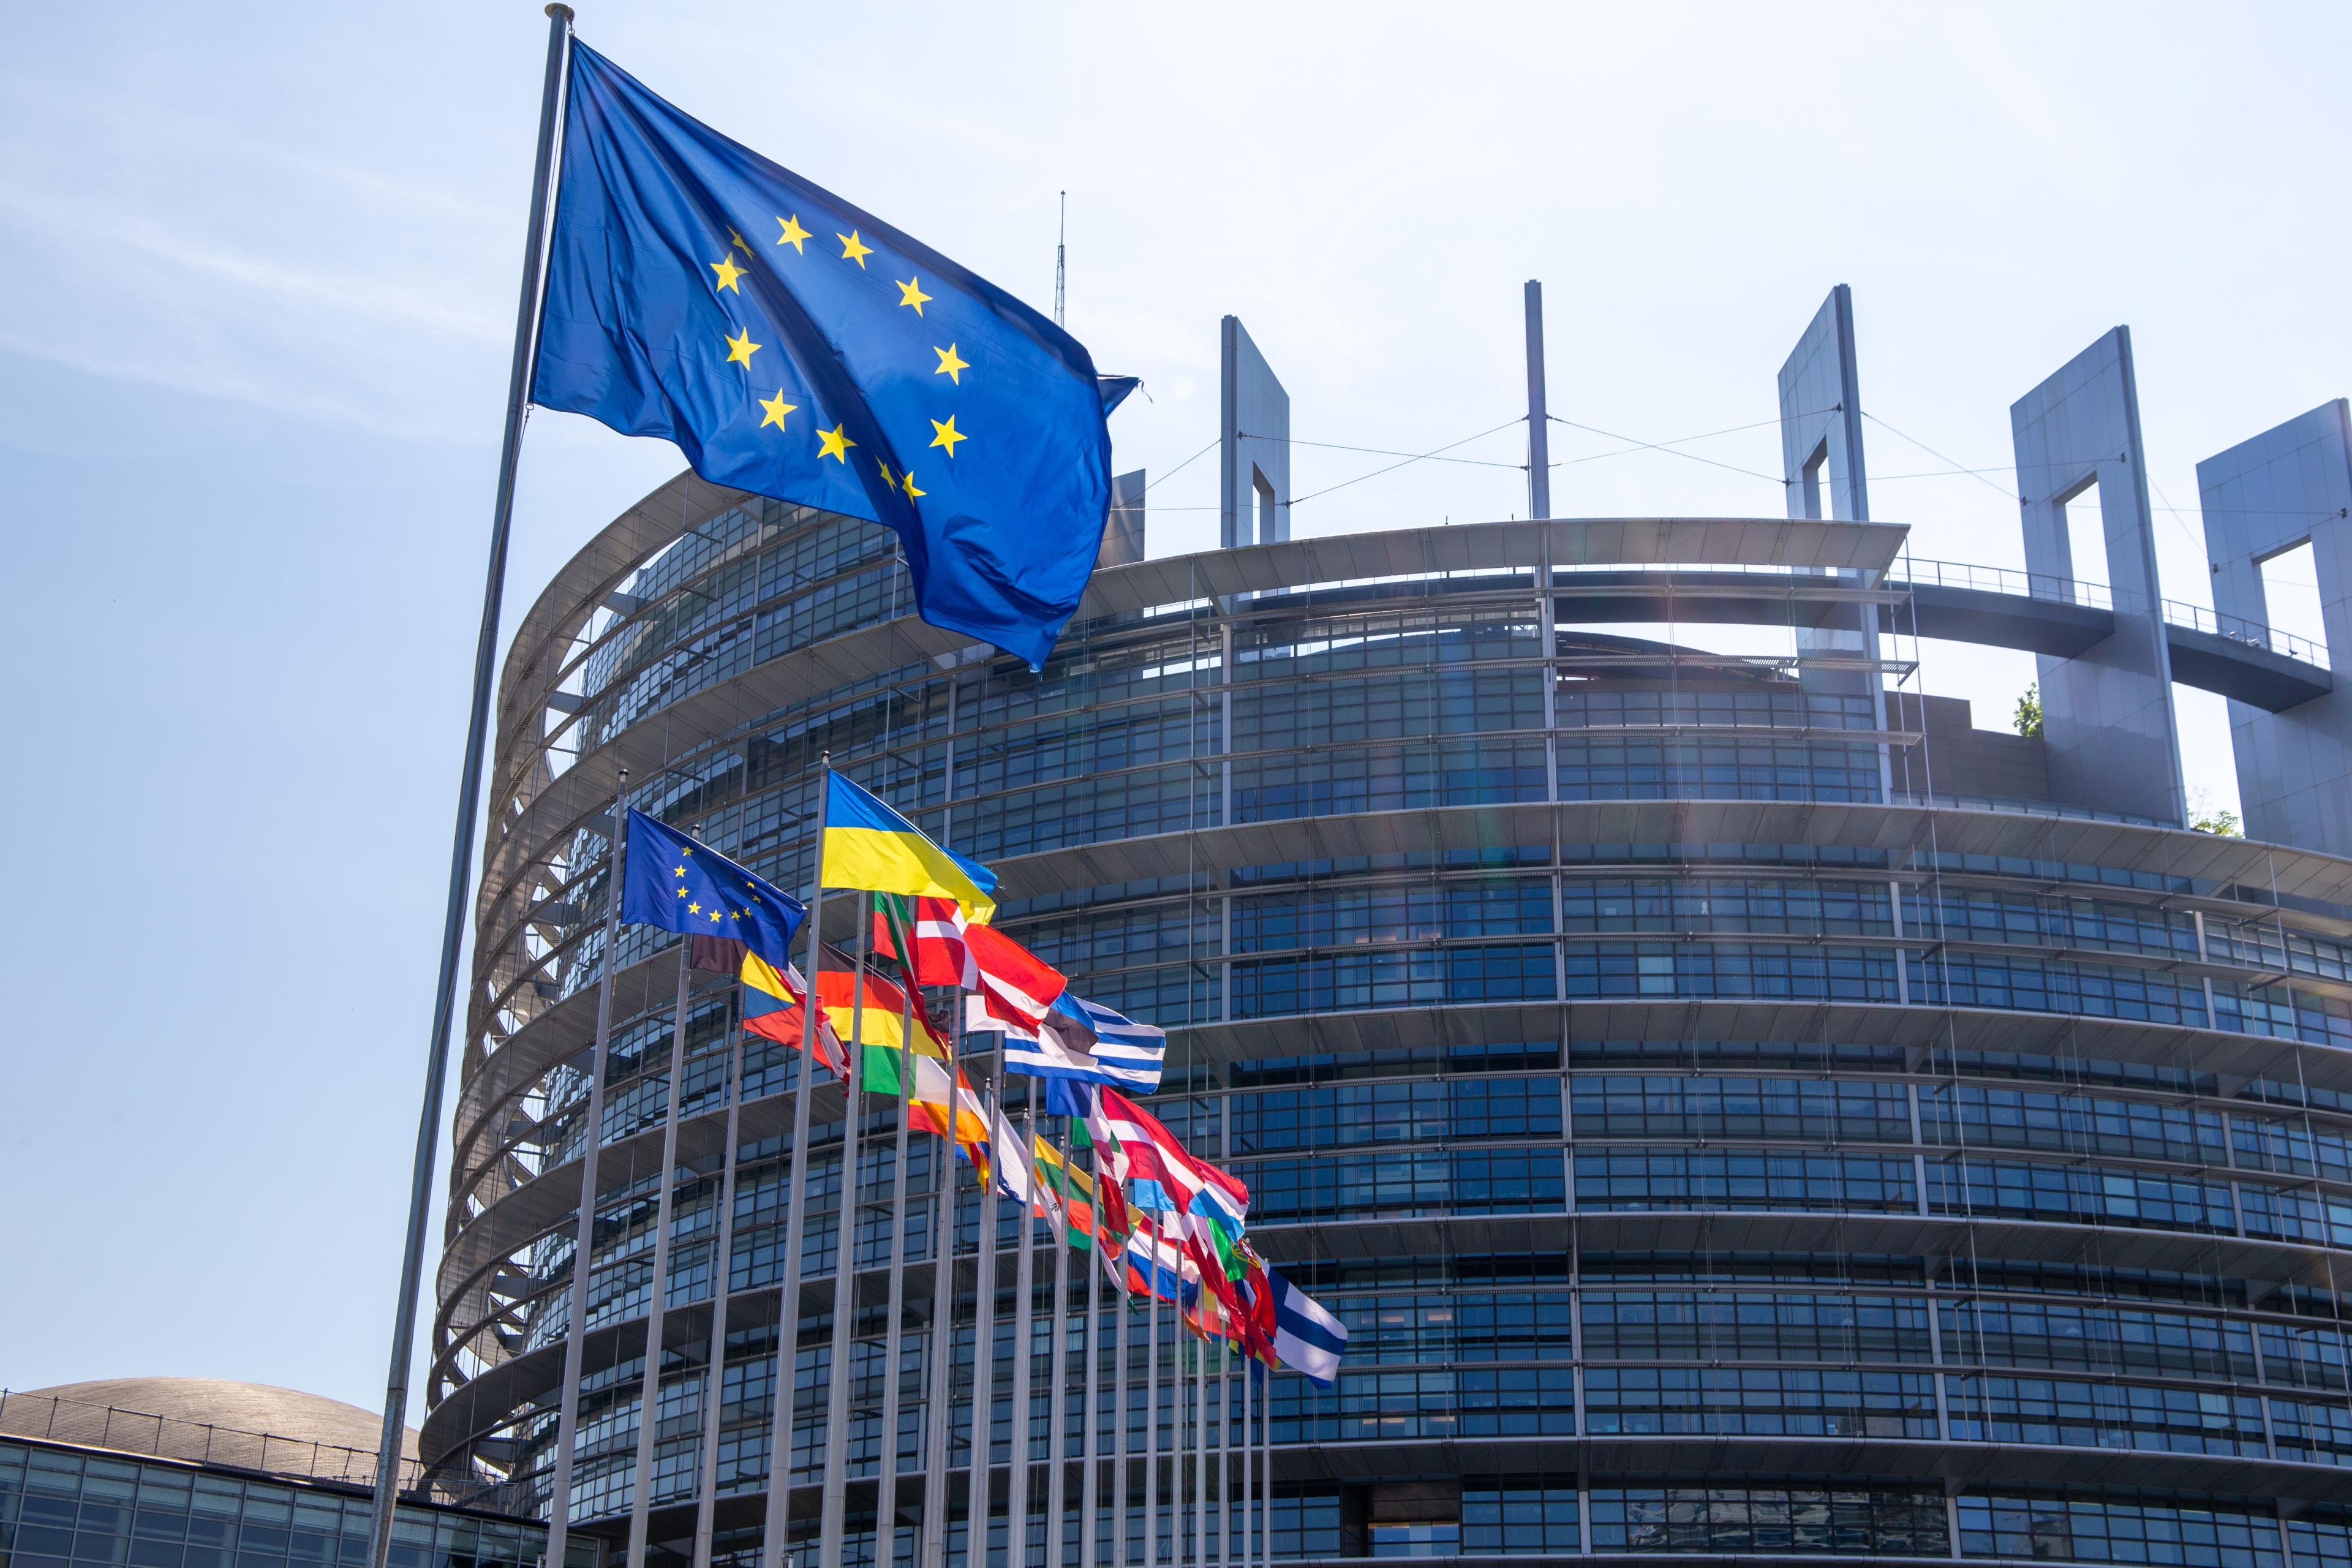 Das europäische Parlament bei Tageslicht und mit der europäischen Flagge im Vordergrund.